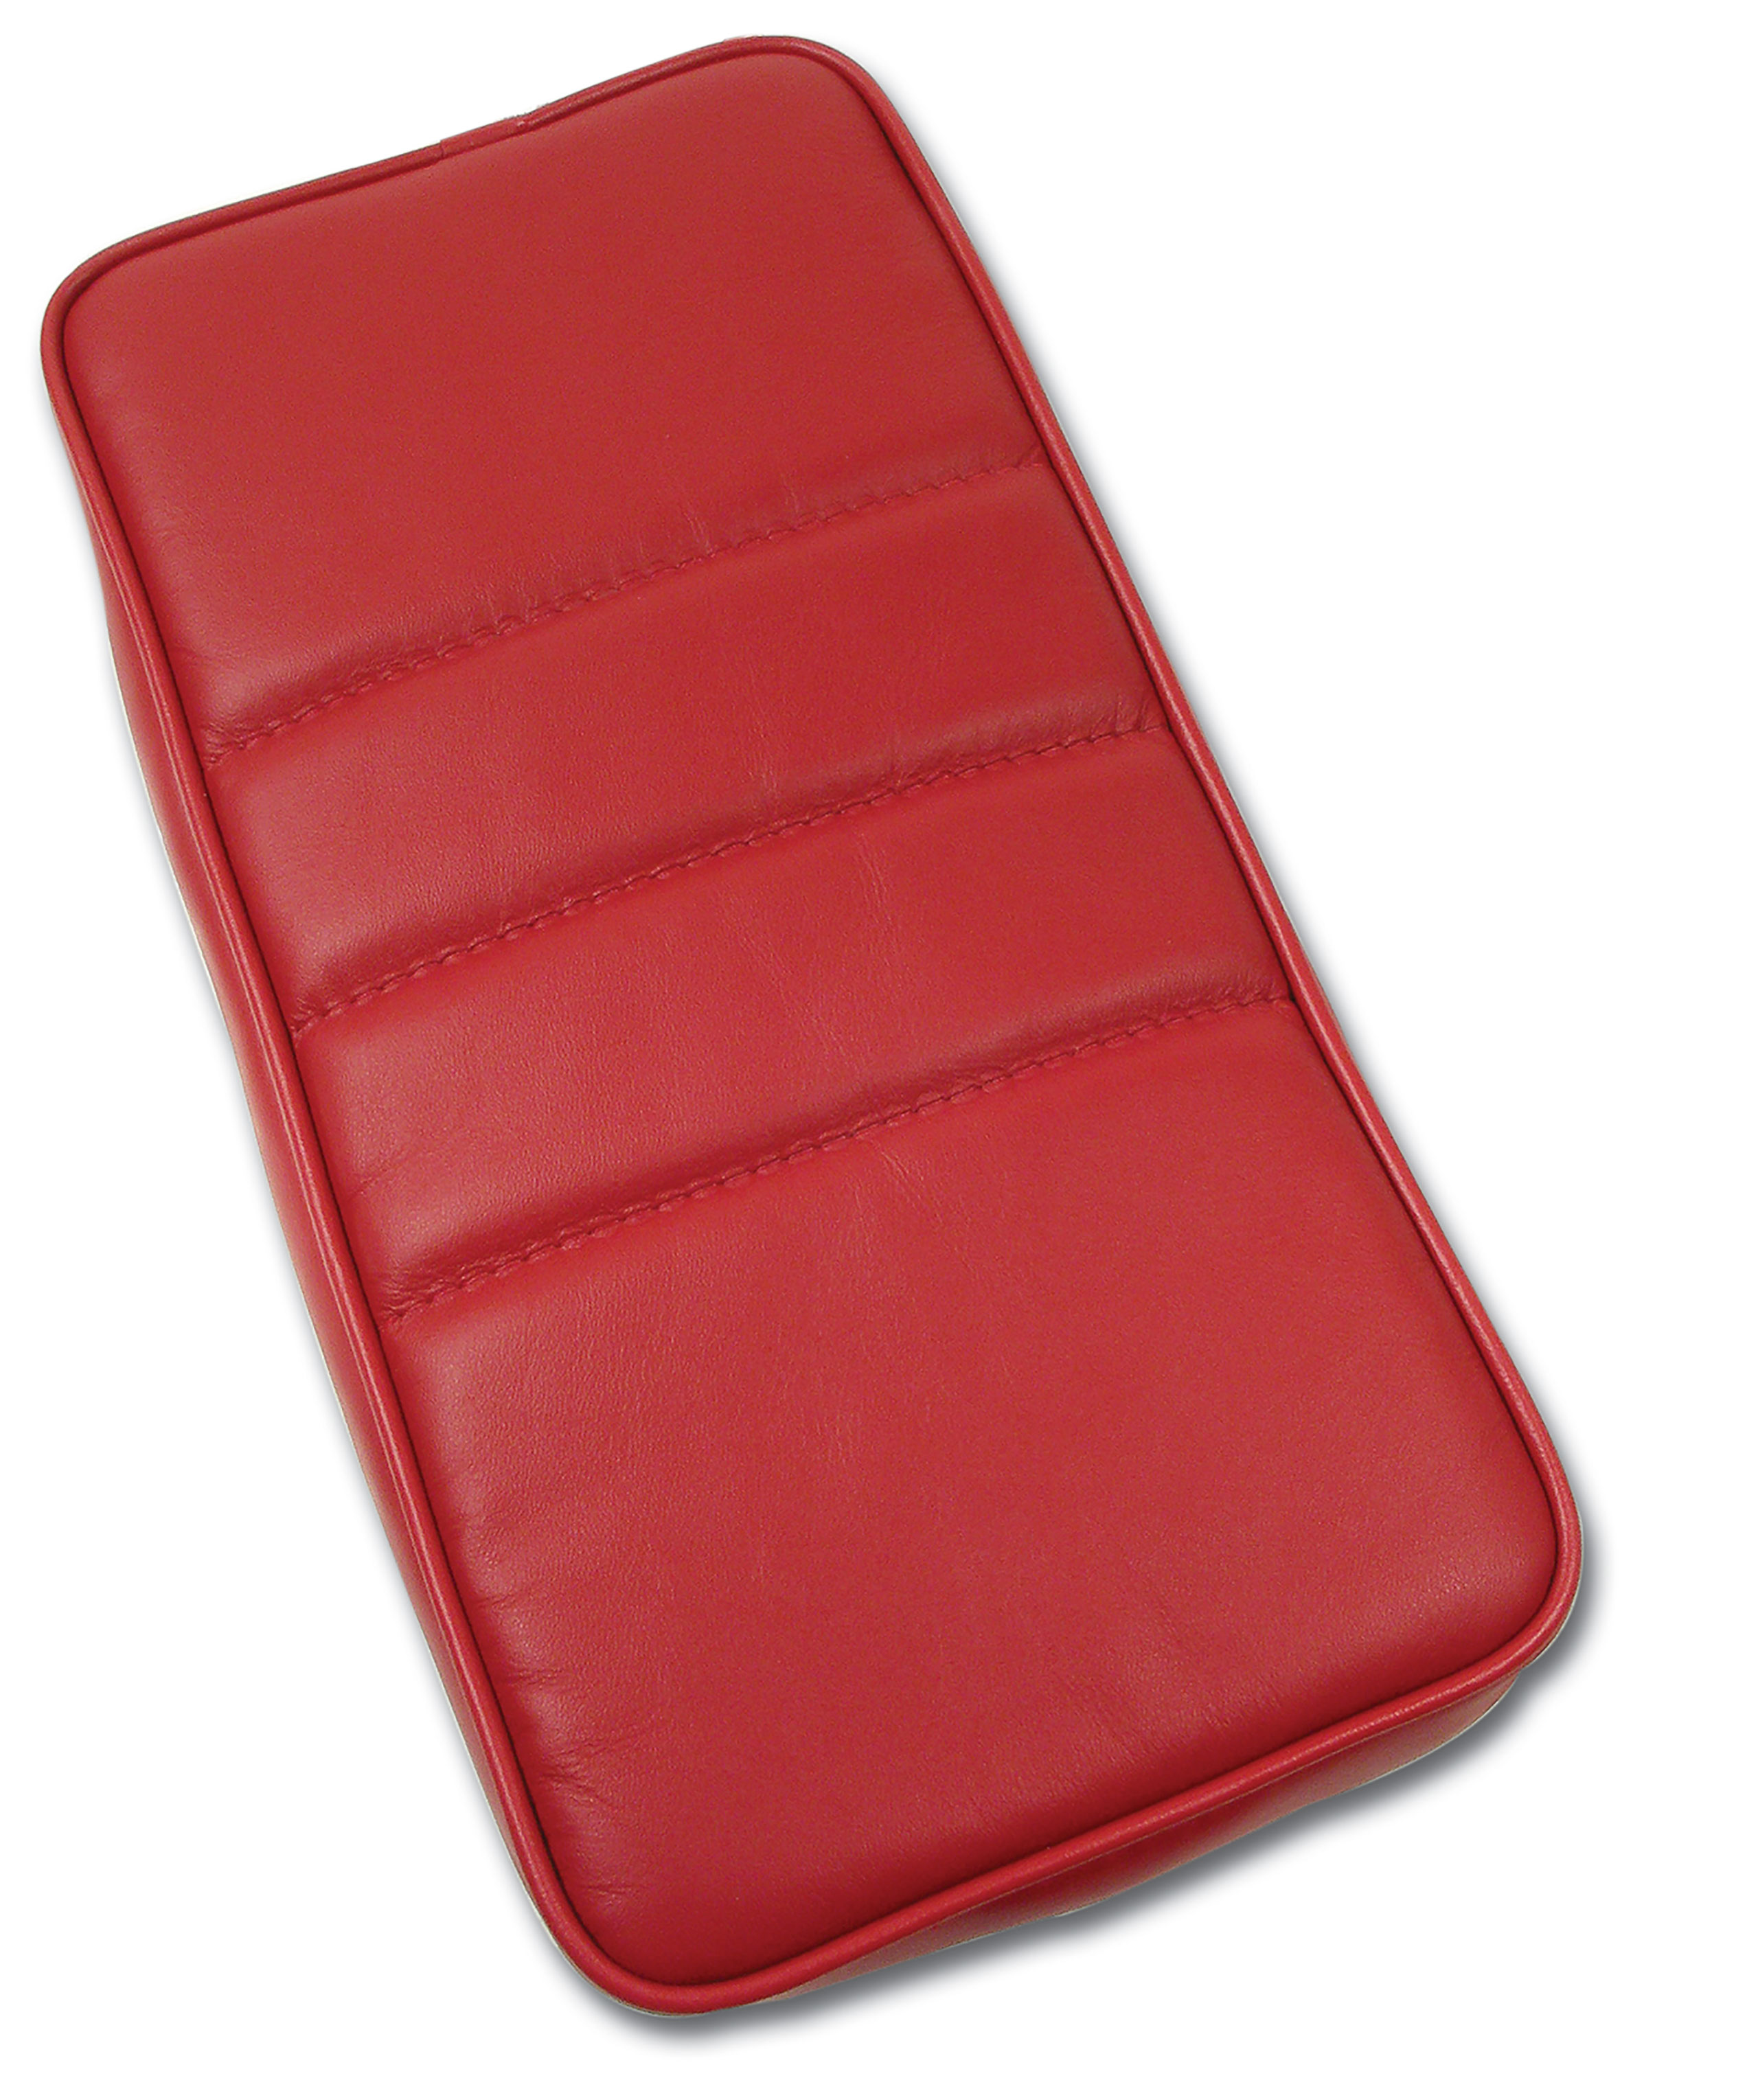 1986-1989 C4 Corvette Center Armrest Red Leather